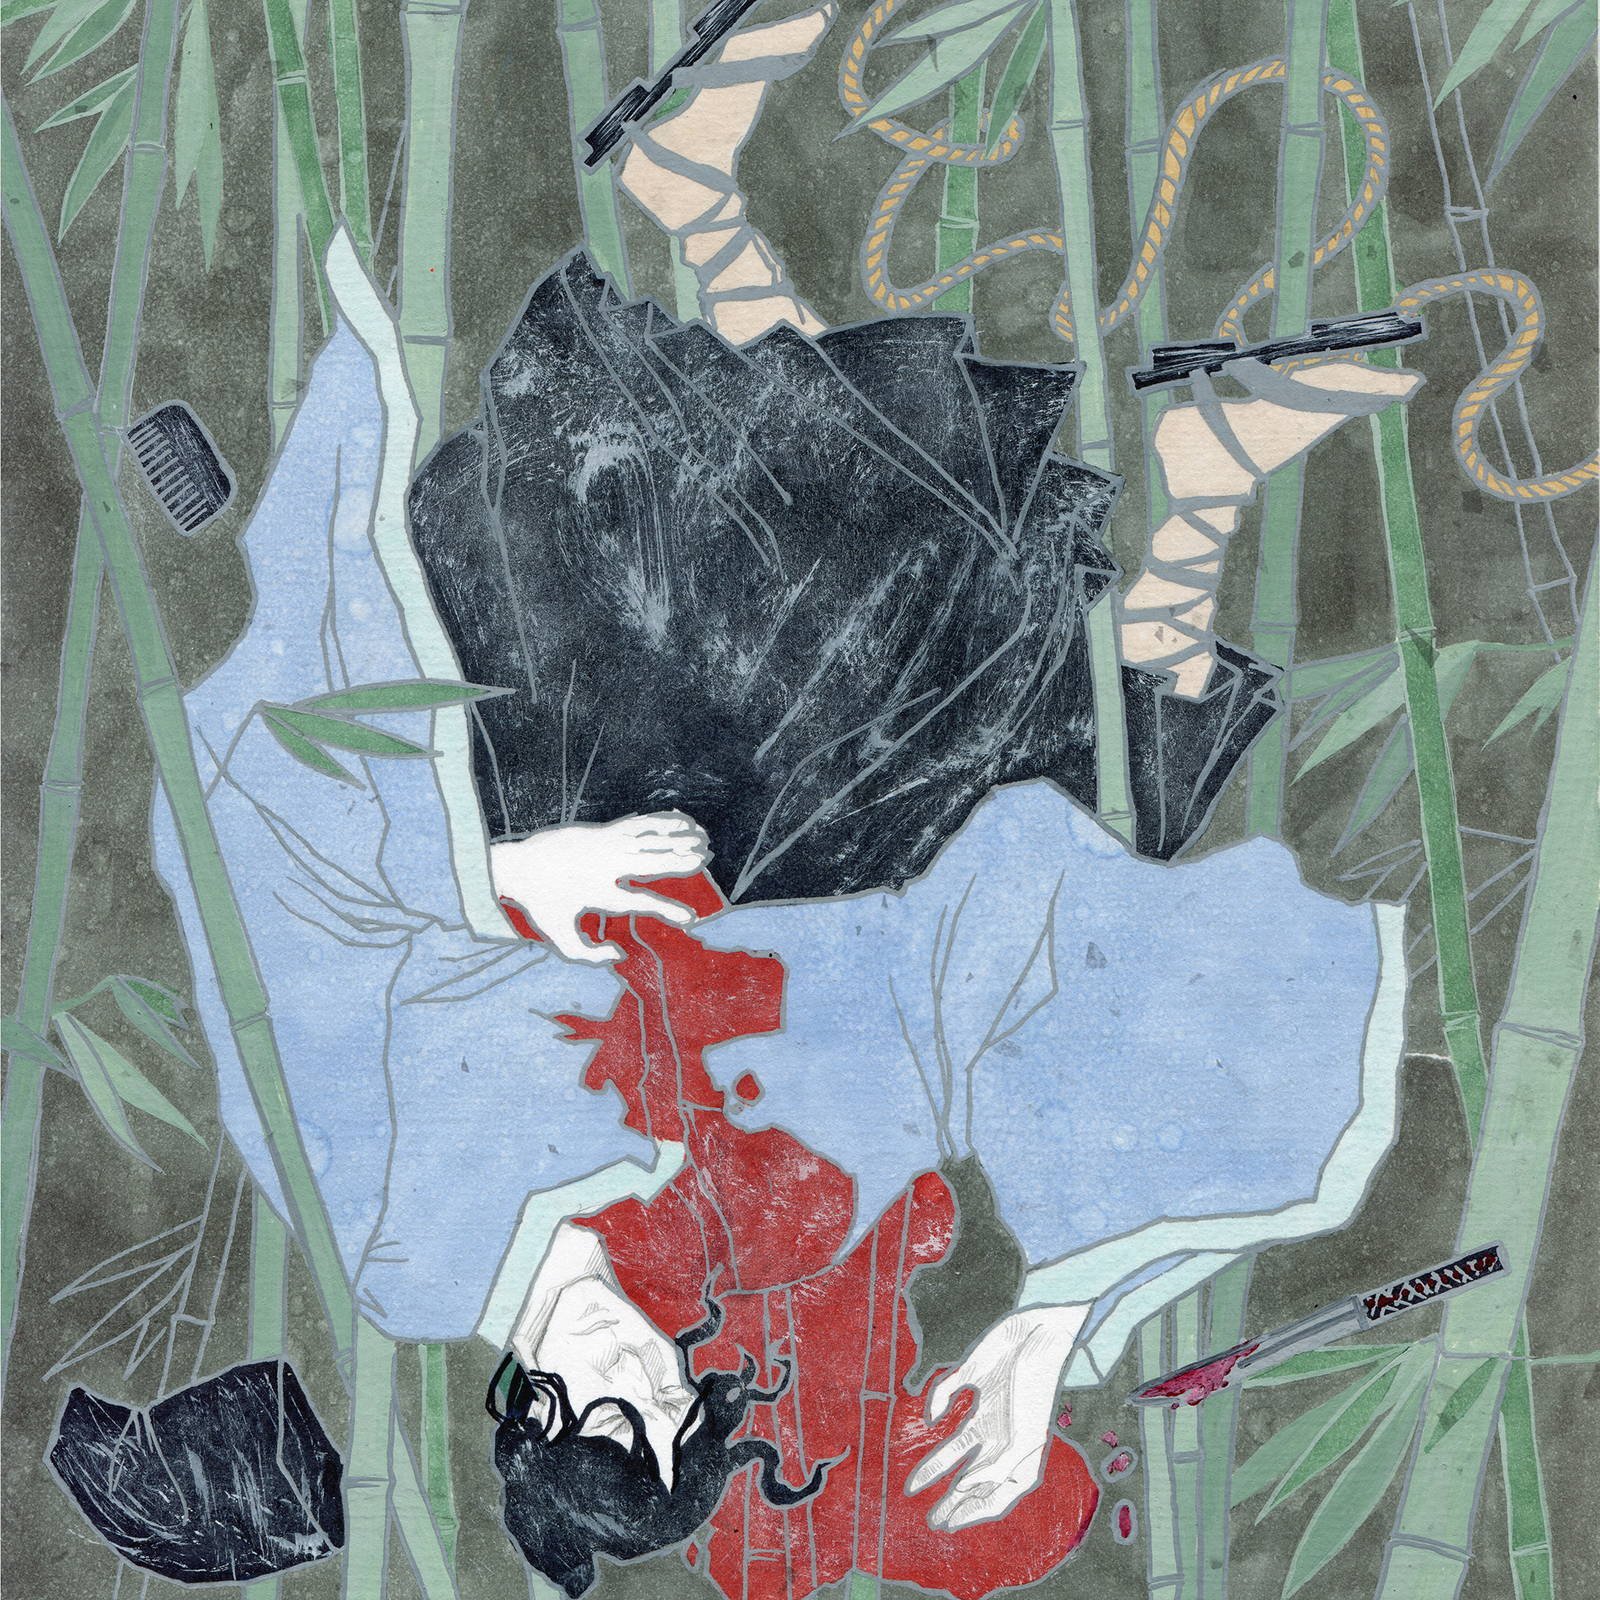 Ryunosuke Akutagawa In the thicket - My, Longpost, Illustrations, Detective, Art, Ryunosuke Akutagawa, Japan, Drawing, Marker